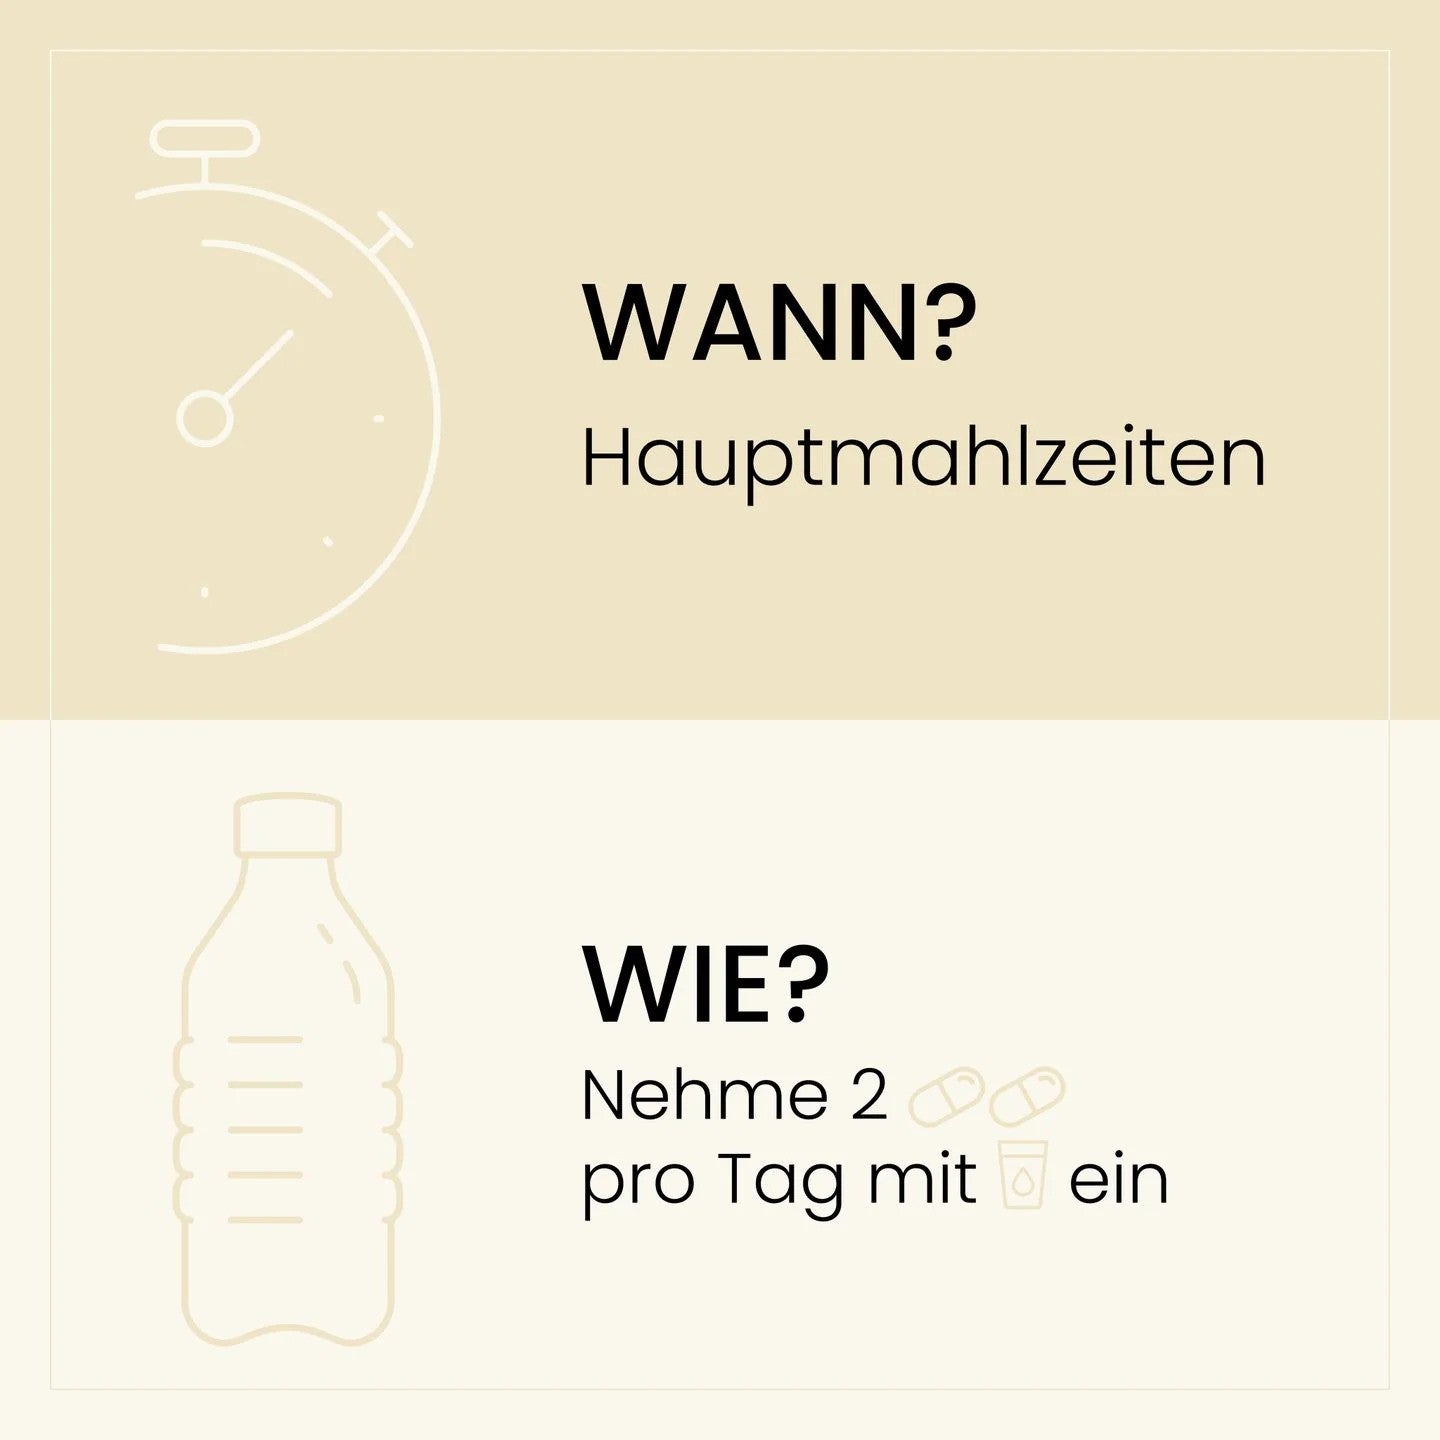 Infografik mit Anweisungen zur Einnahme von zwei Kapseln täglich zu den Hauptmahlzeiten, dargestellt mit einer Grafik einer Flasche und Pillen neben einem Wasserglas.